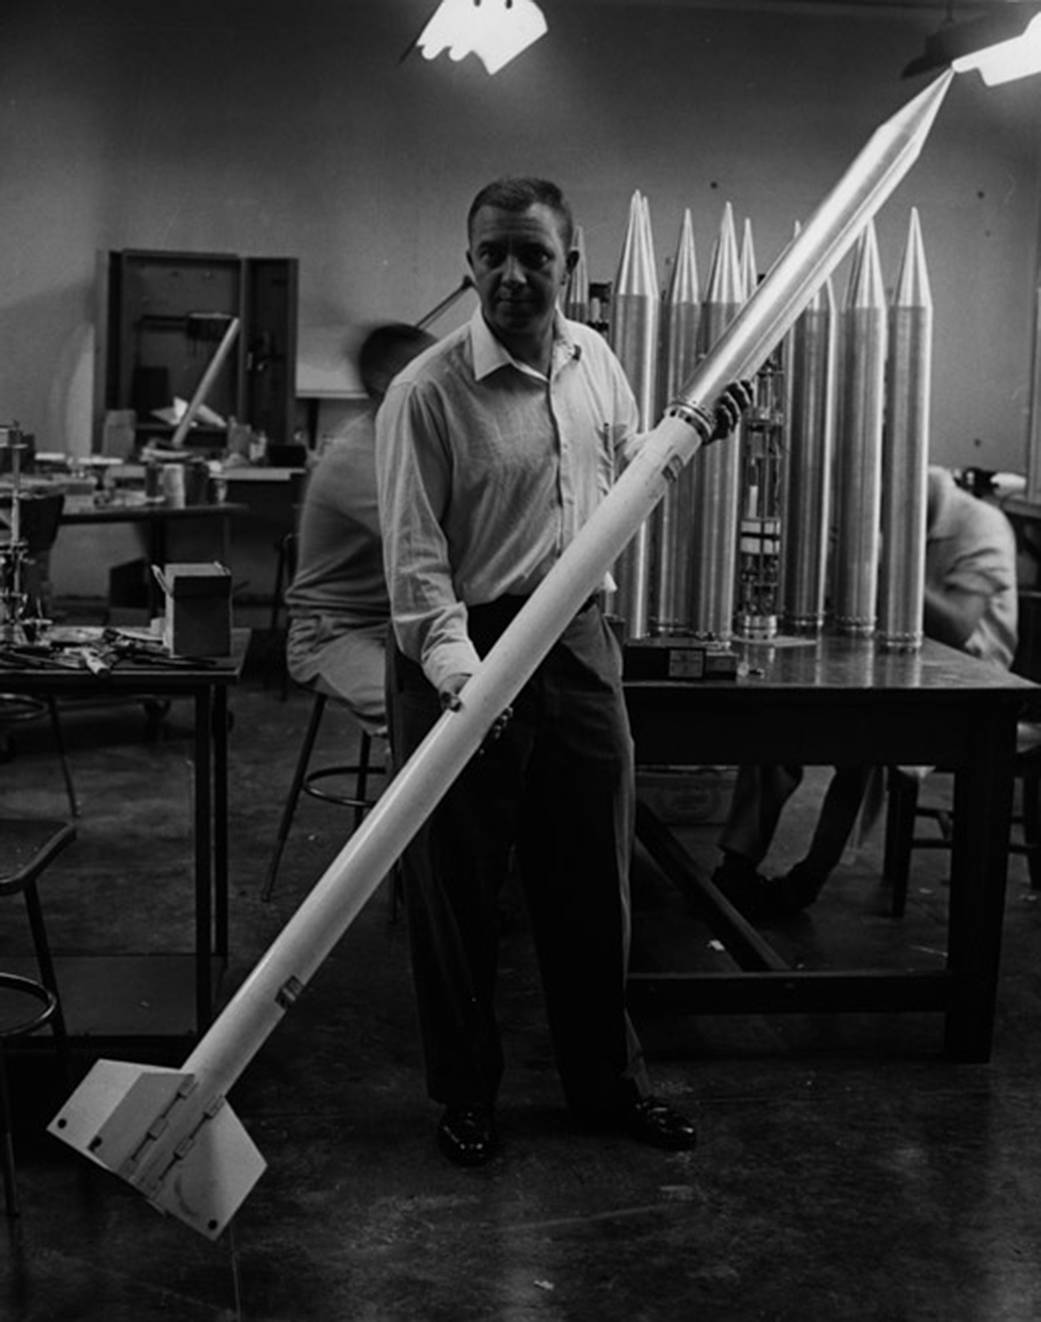 James Van Allen with rocket model